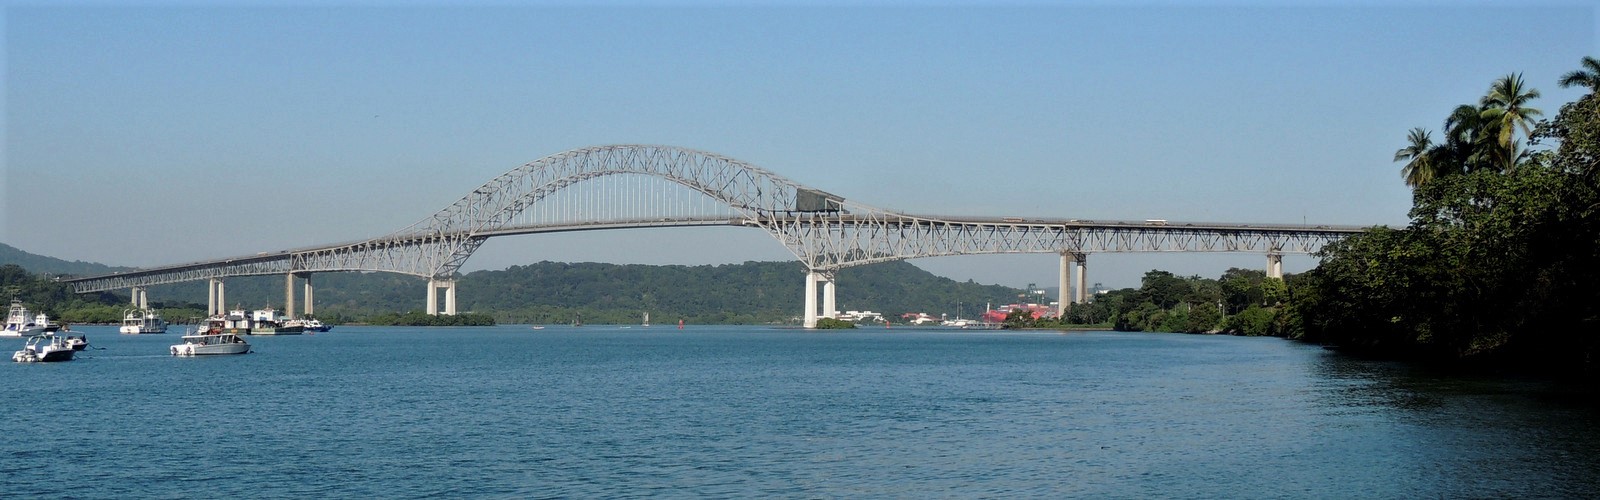 Puente de las Américas in Panama